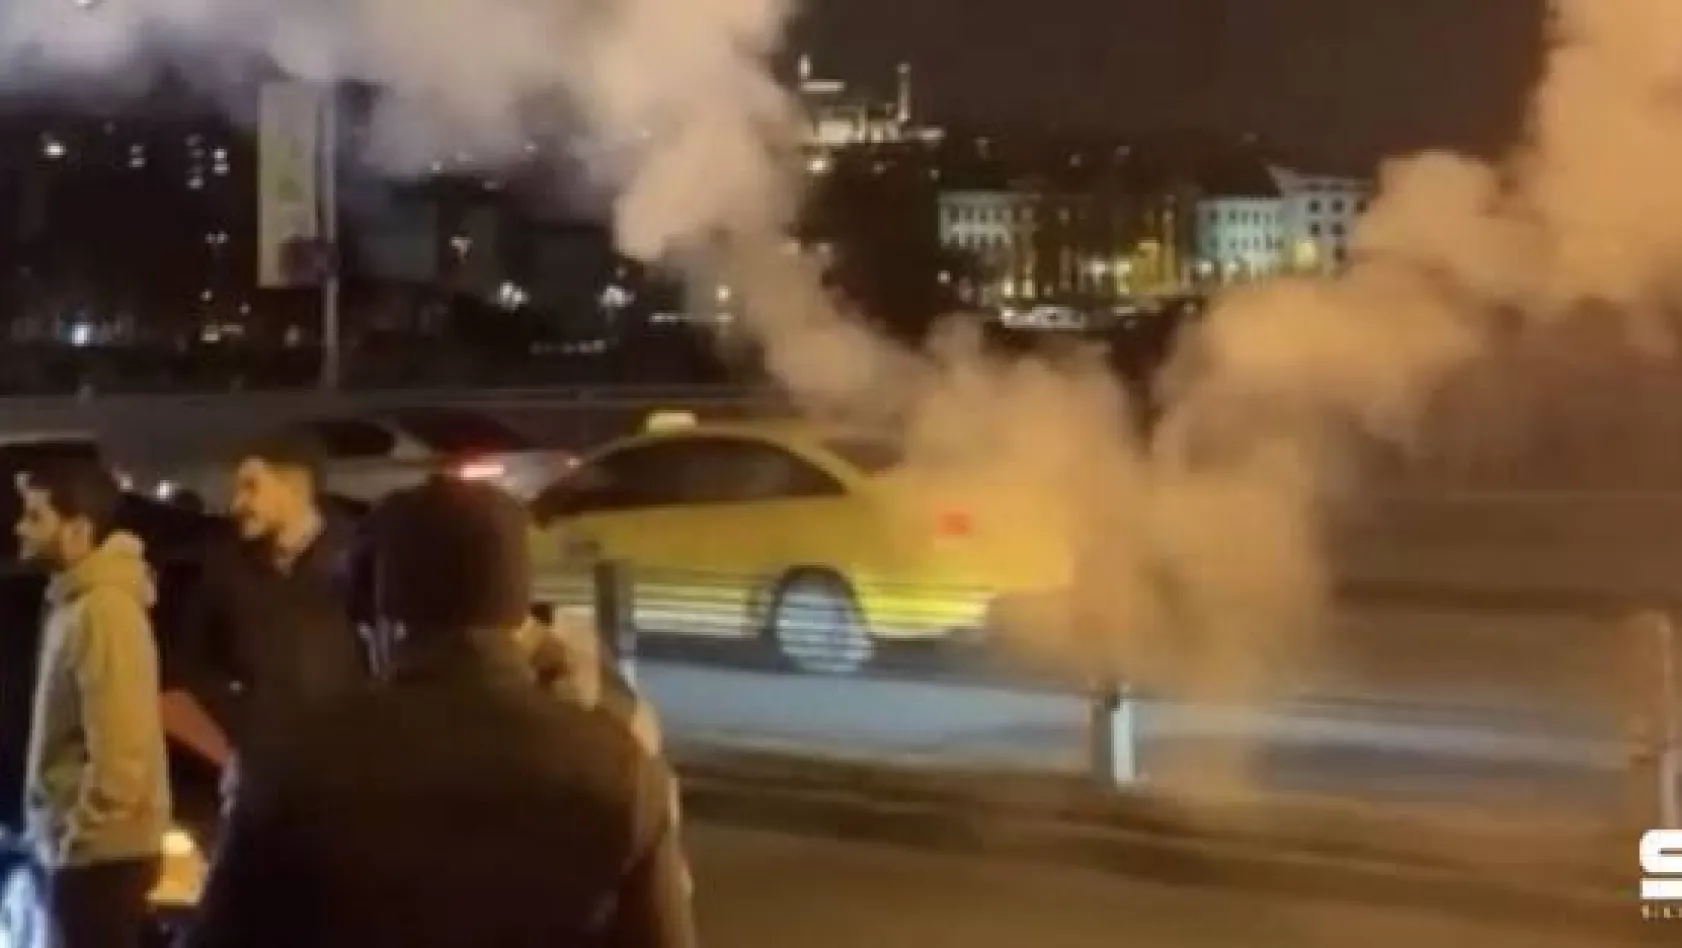 (Özel) İstanbul trafiğinde yasağa rağmen asker uğurlama terörü kamerada